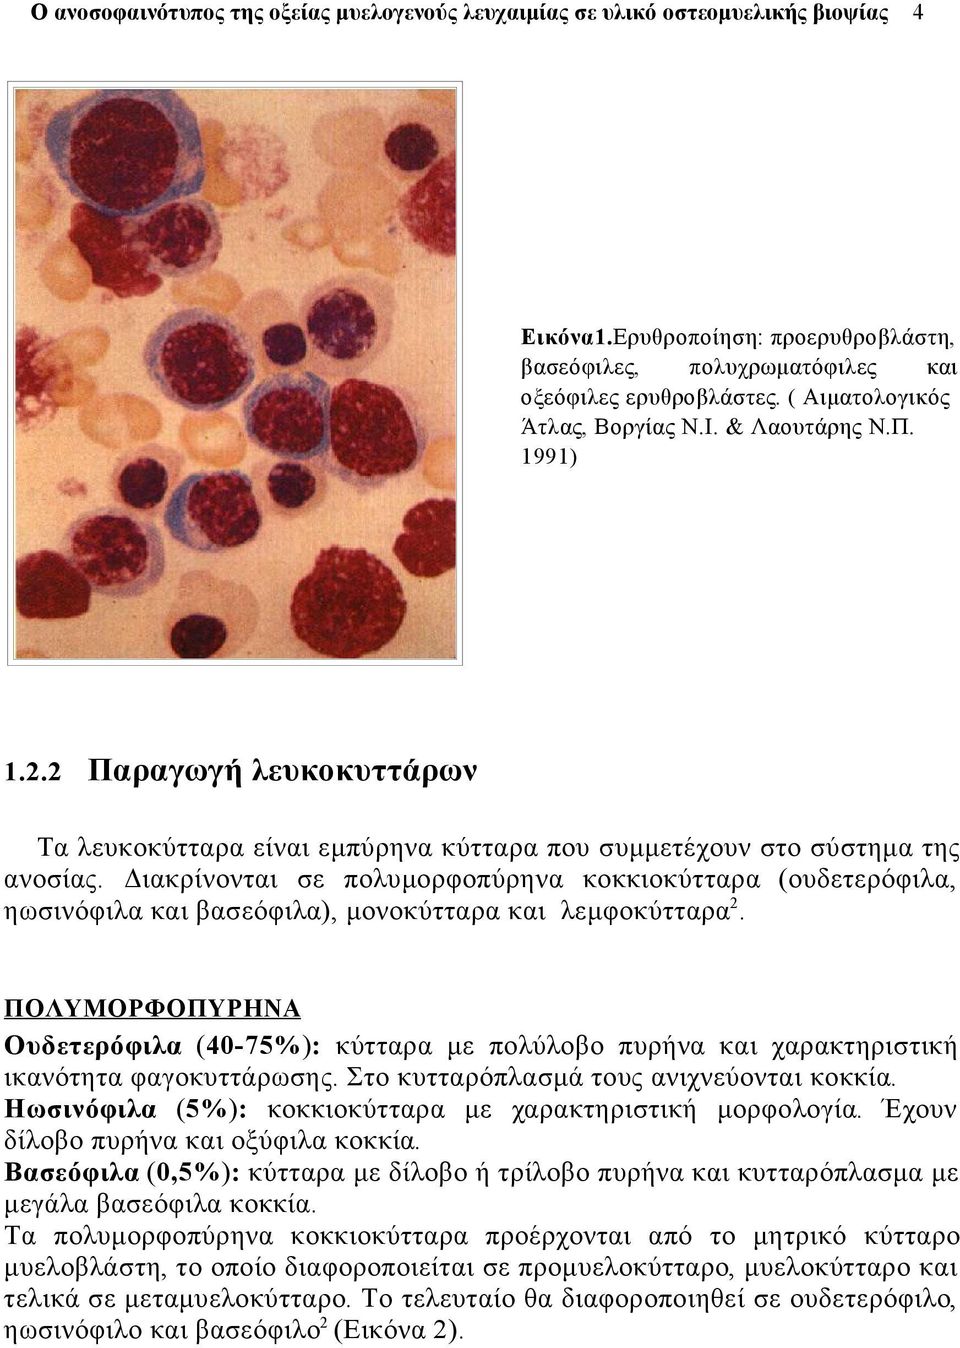 Διακρίνονται σε πολυμορφοπύρηνα κοκκιοκύτταρα (ουδετερόφιλα, ηωσινόφιλα και βασεόφιλα), μονοκύτταρα και λεμφοκύτταρα 2.